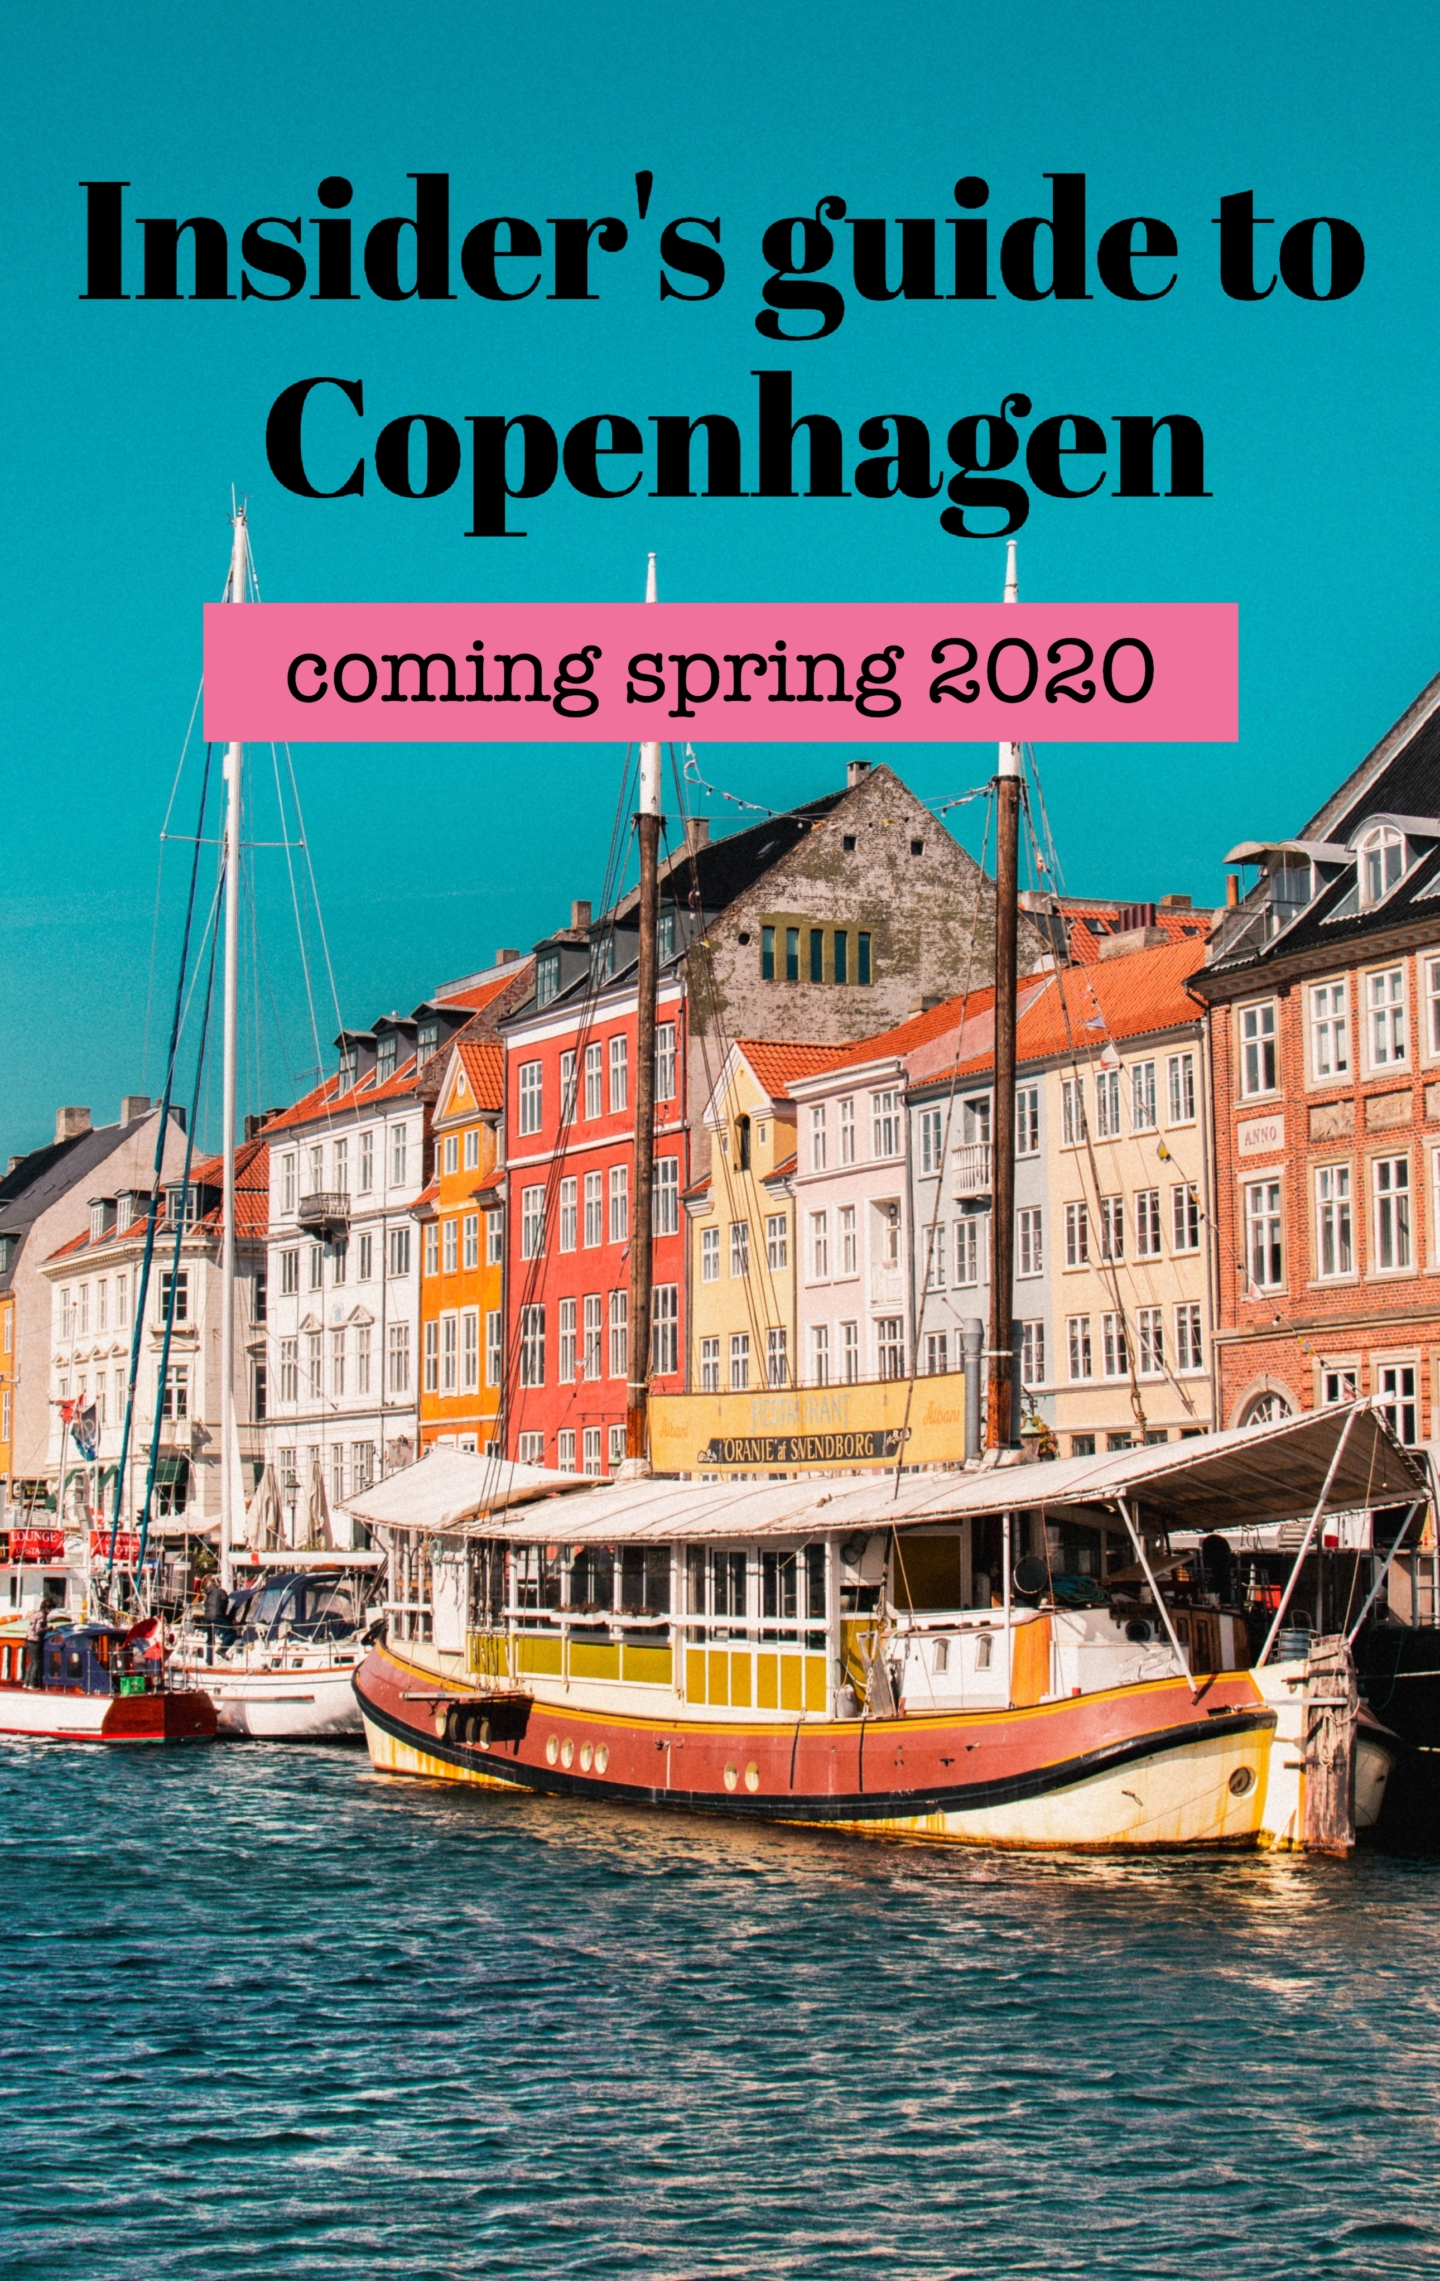 Insider's guide to Copenhagen